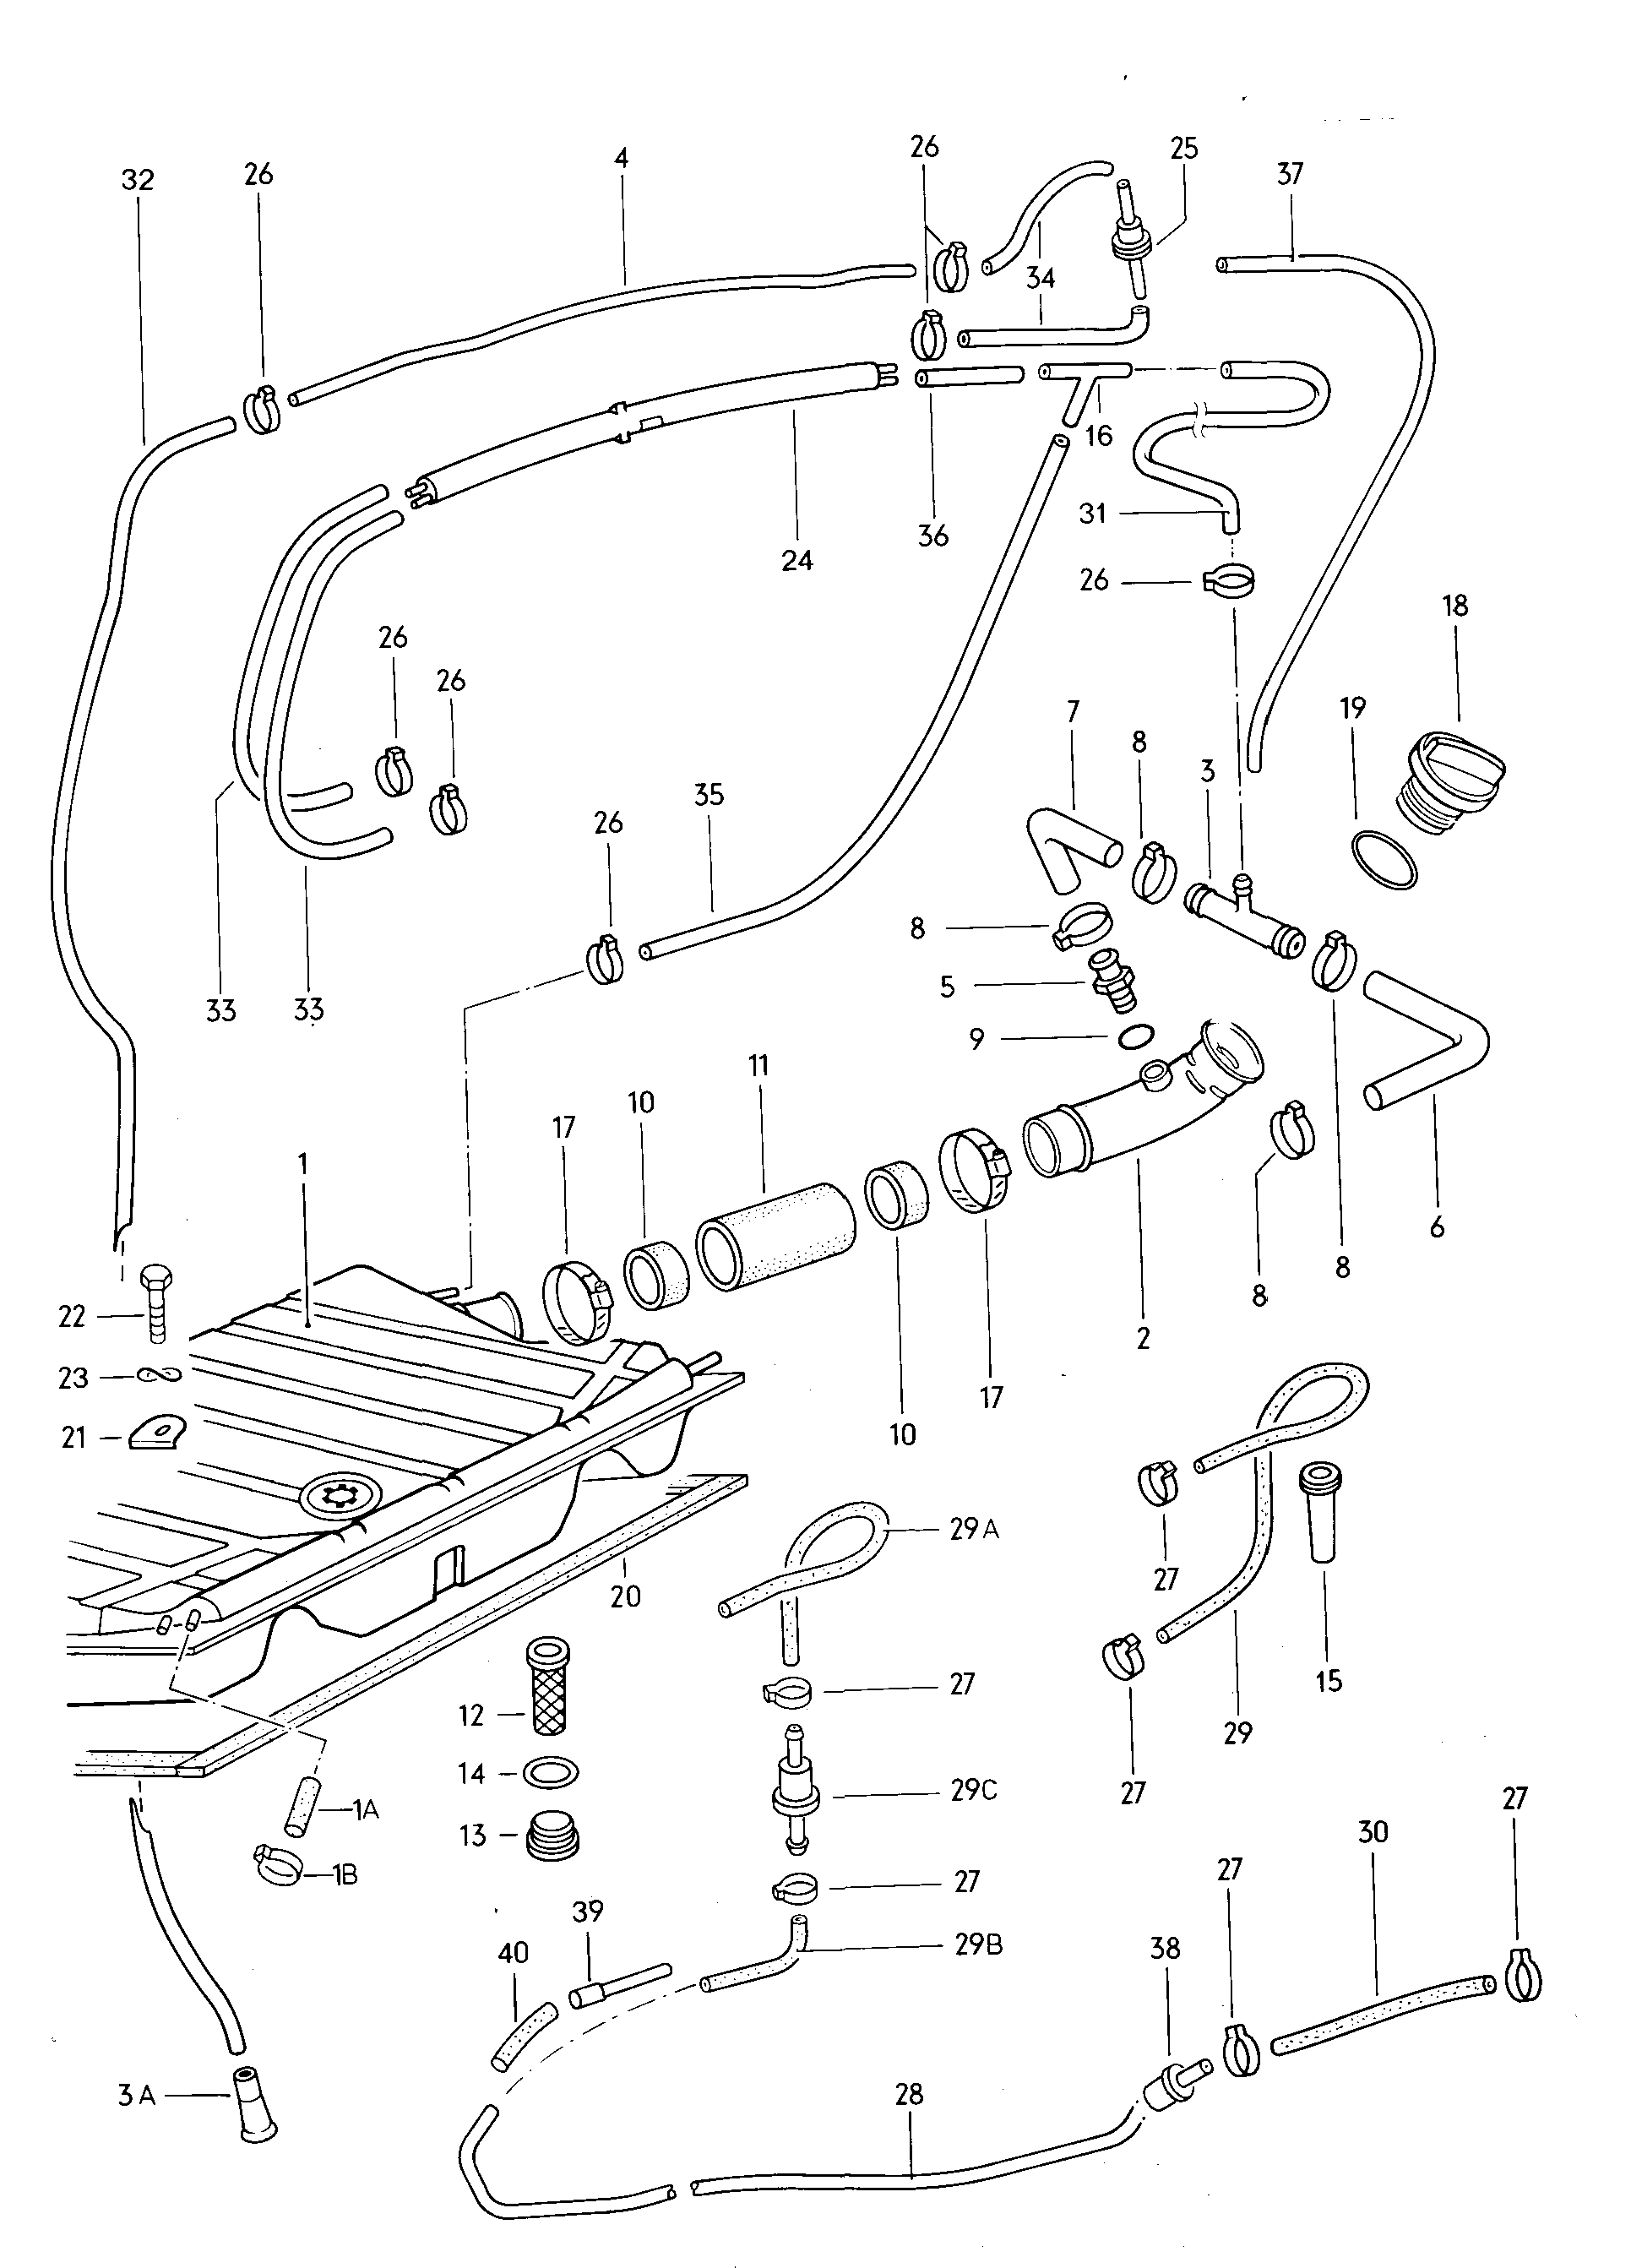 GT Fuel Tank System diagram - Classic Alfa